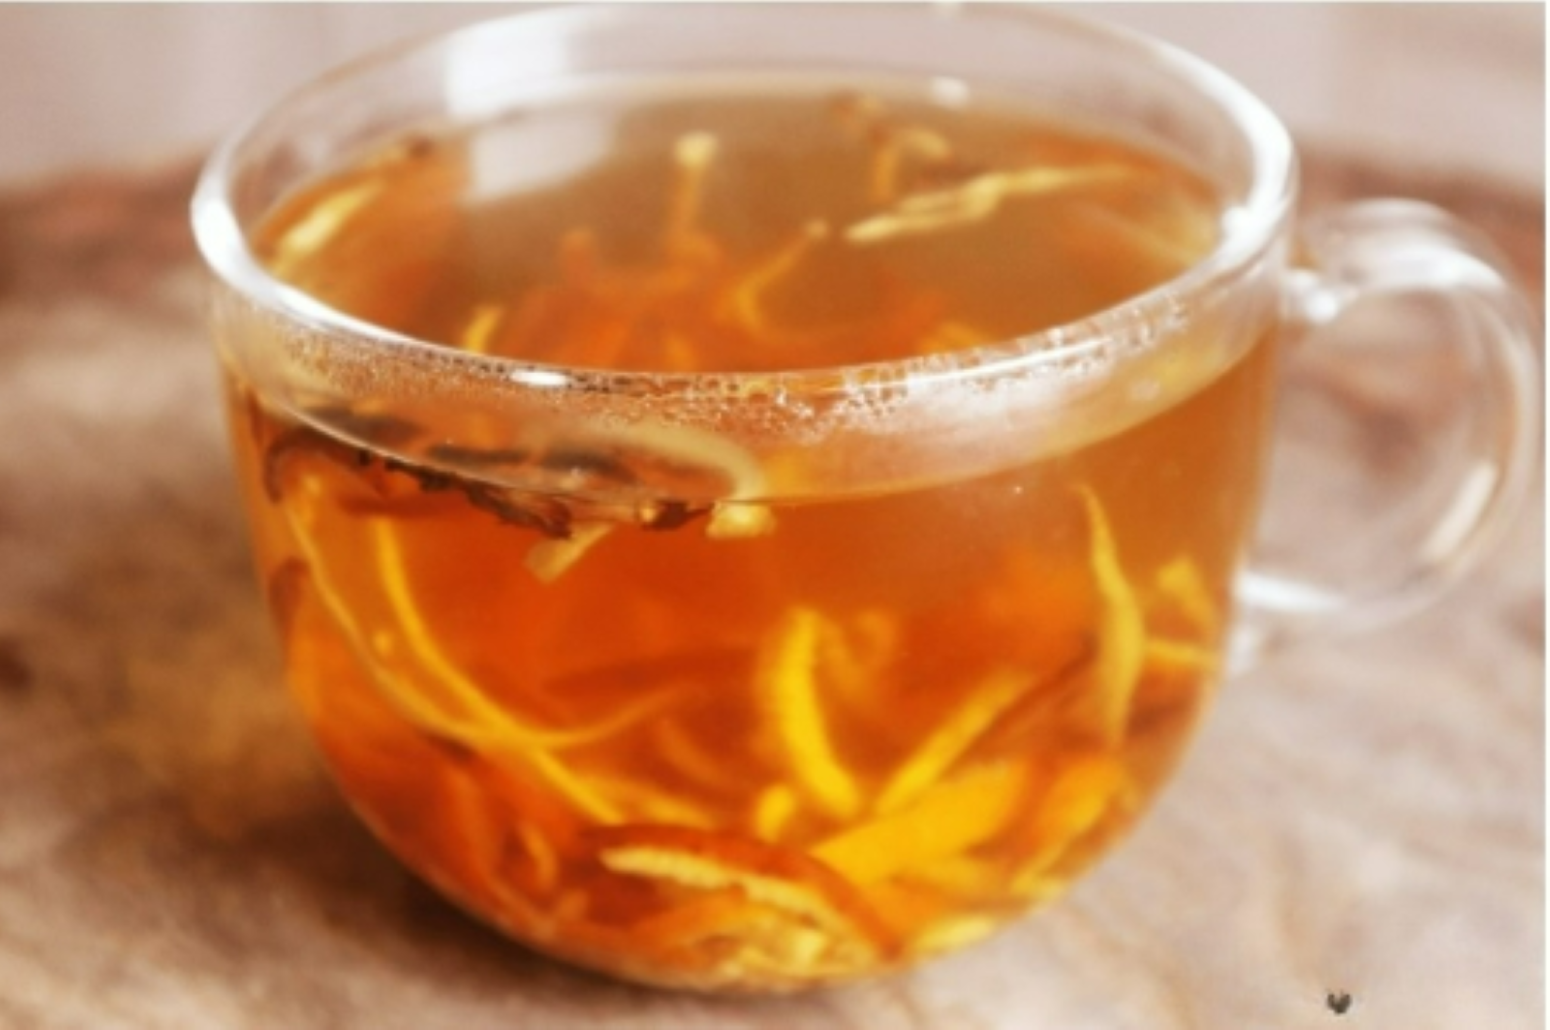 Uống trà gừng trần bì giúp trẻ hóa mạch máu. (Nguồn: Sohu)